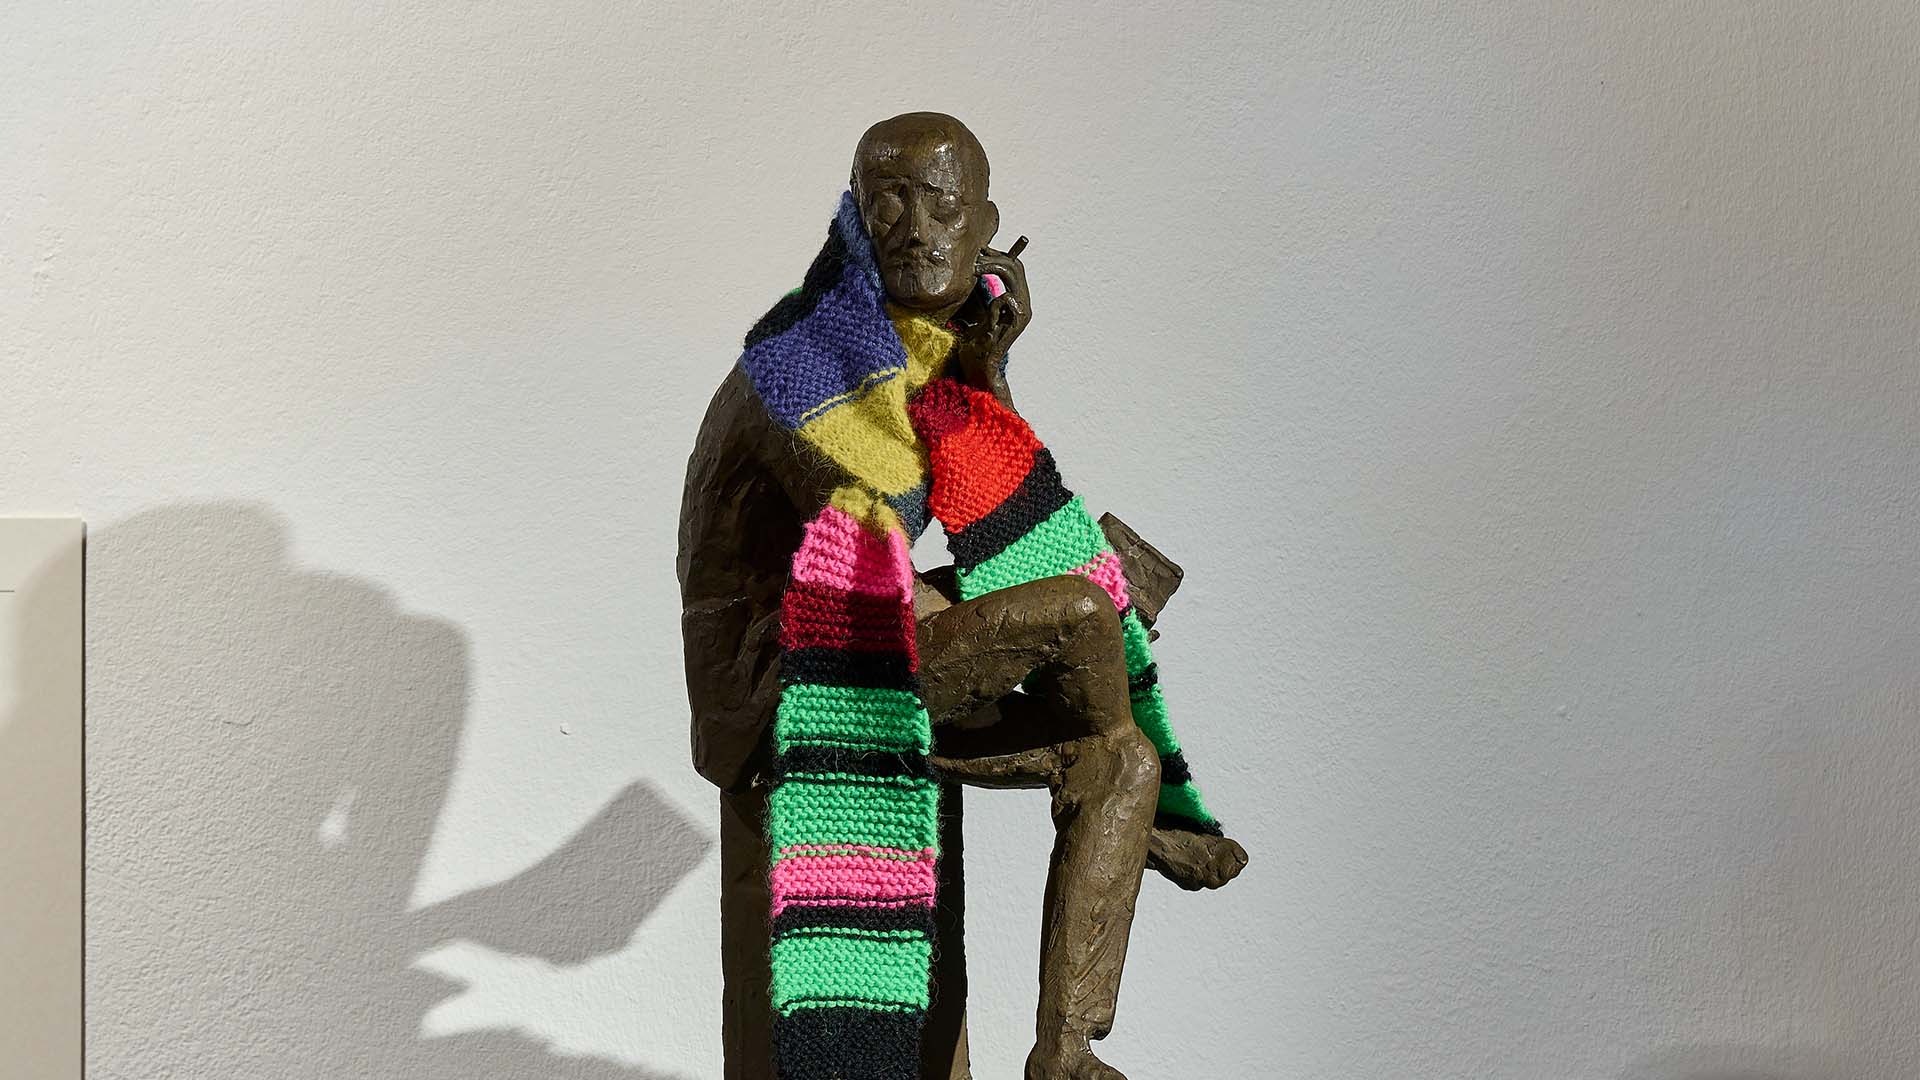 Das Bild zeigt eine Bronzestatue von James Joyce, auf der er einen bunten Schal trägt.